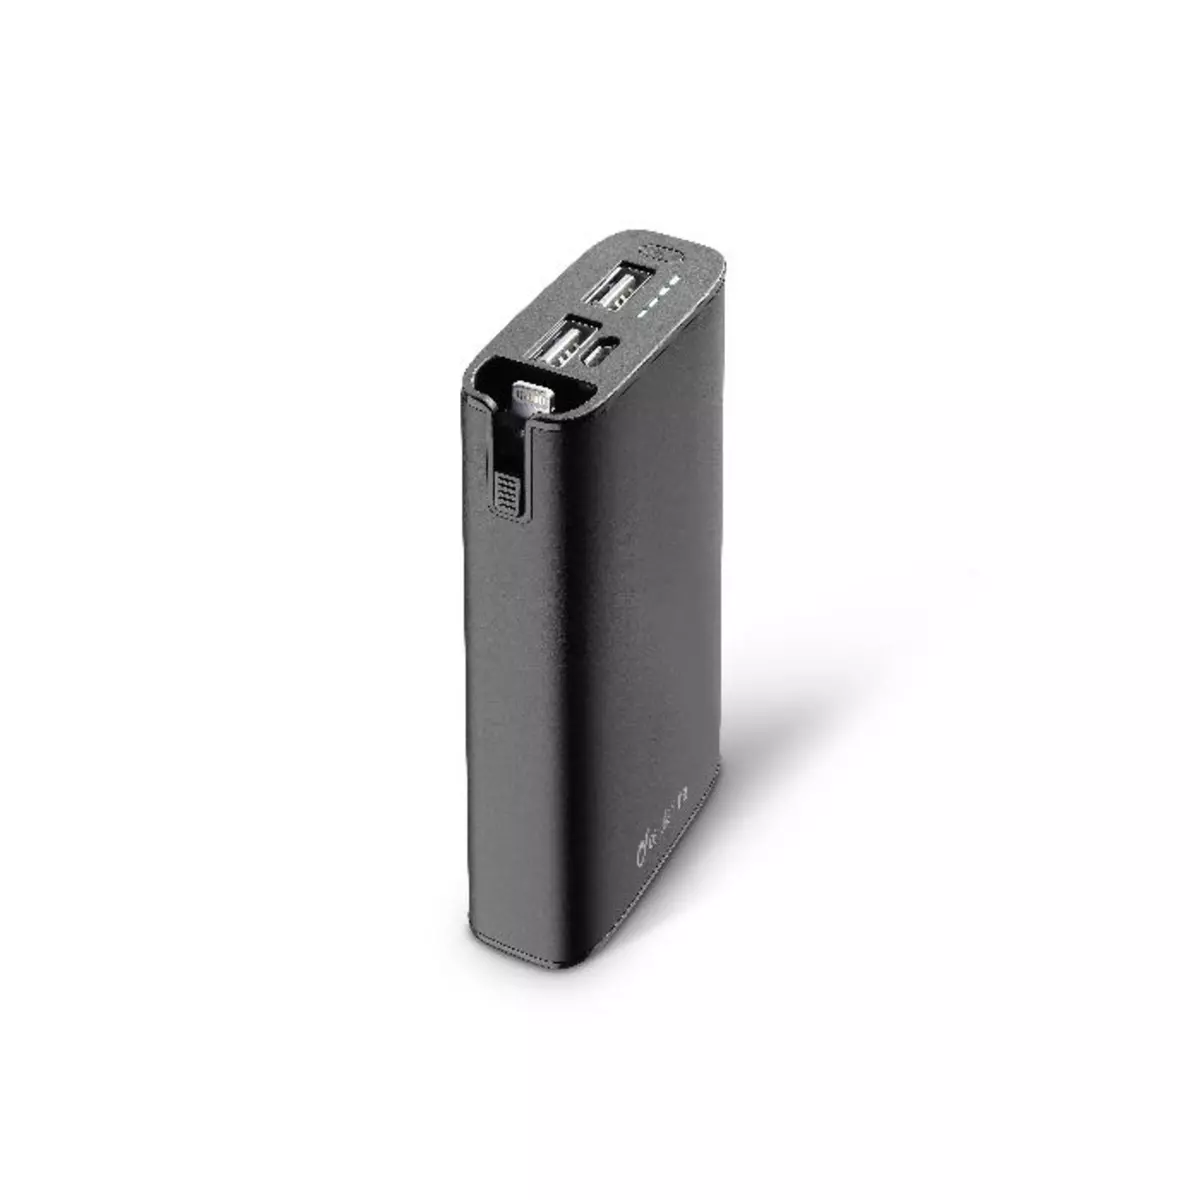 CELLULAR LINE Batterie de secours pour Ipod, iPhone et iPad - FREEP6700MFIIPHK - Noir